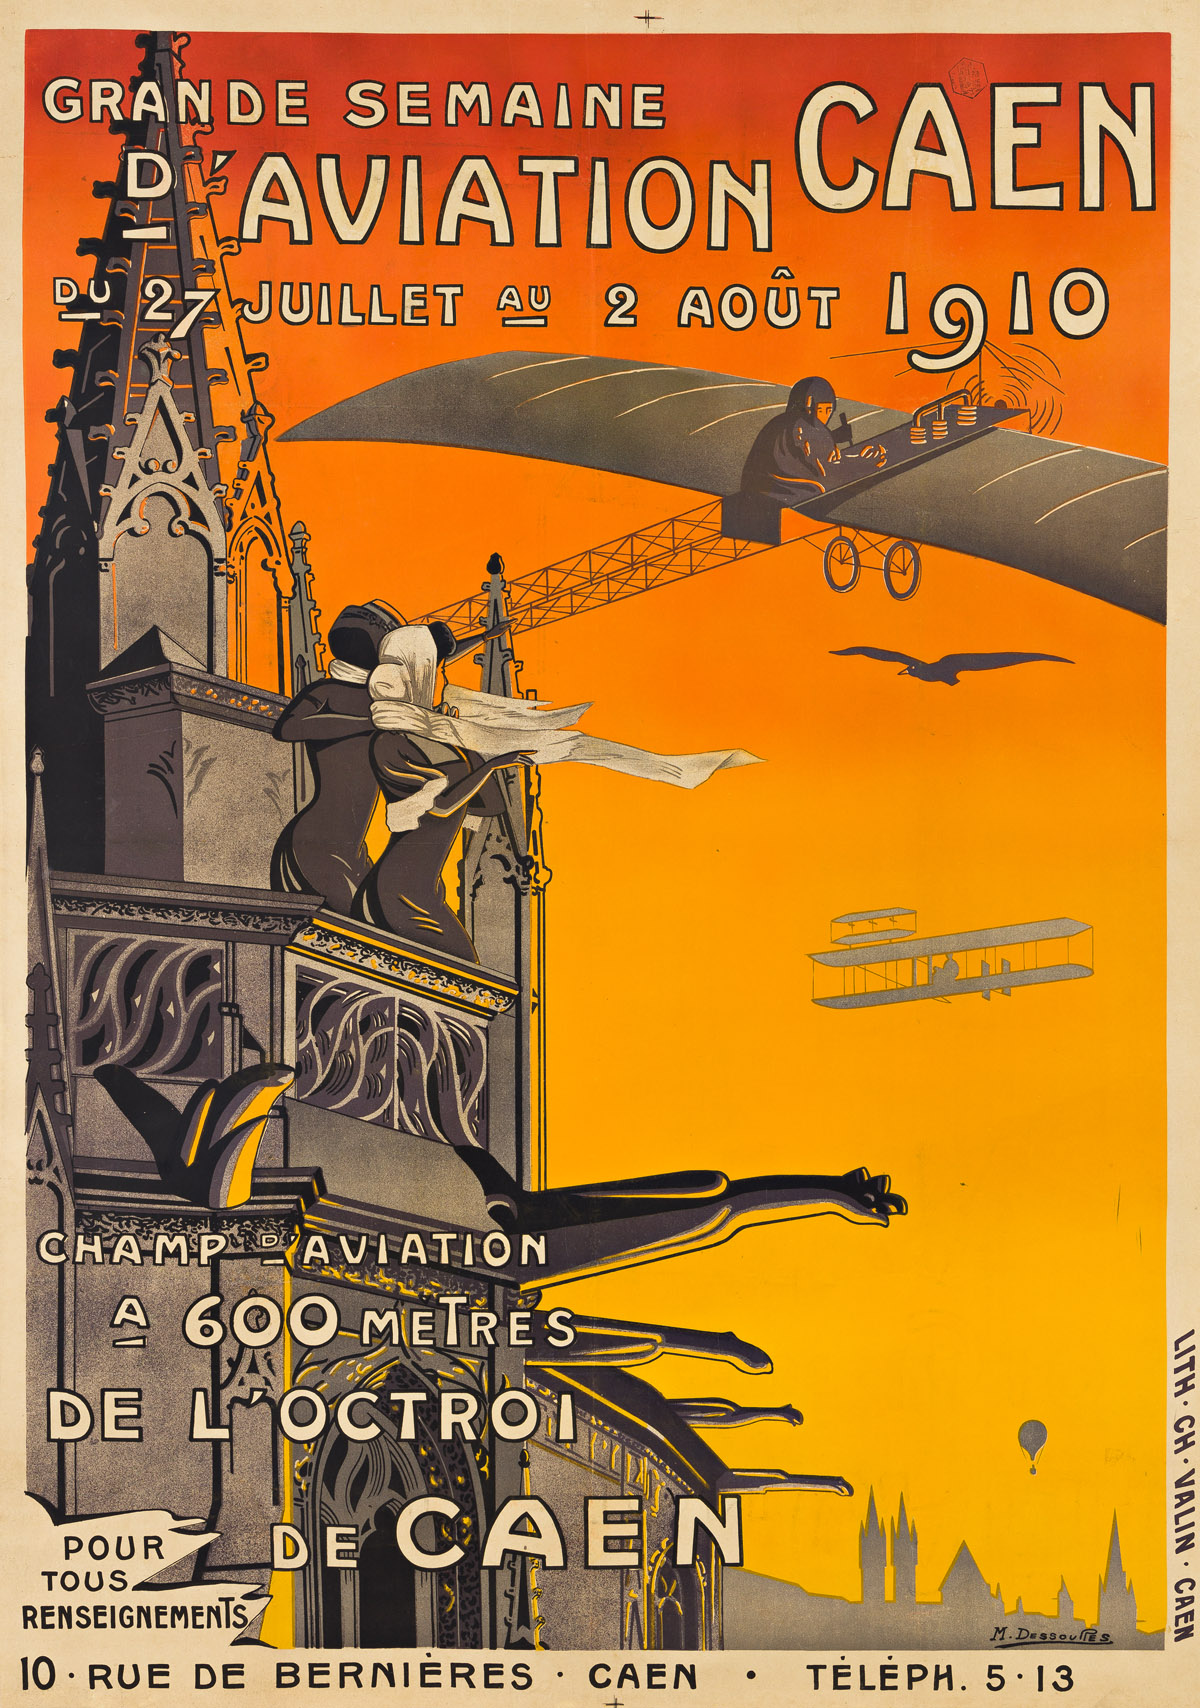 M. DESSOURES (DATES UNKNOWN).  GRANDE SEMAINE DAVIATION CAEN. 1910. 51½x38½ inches, 130¾x97¾ cm. Ch. Valin, Caen.